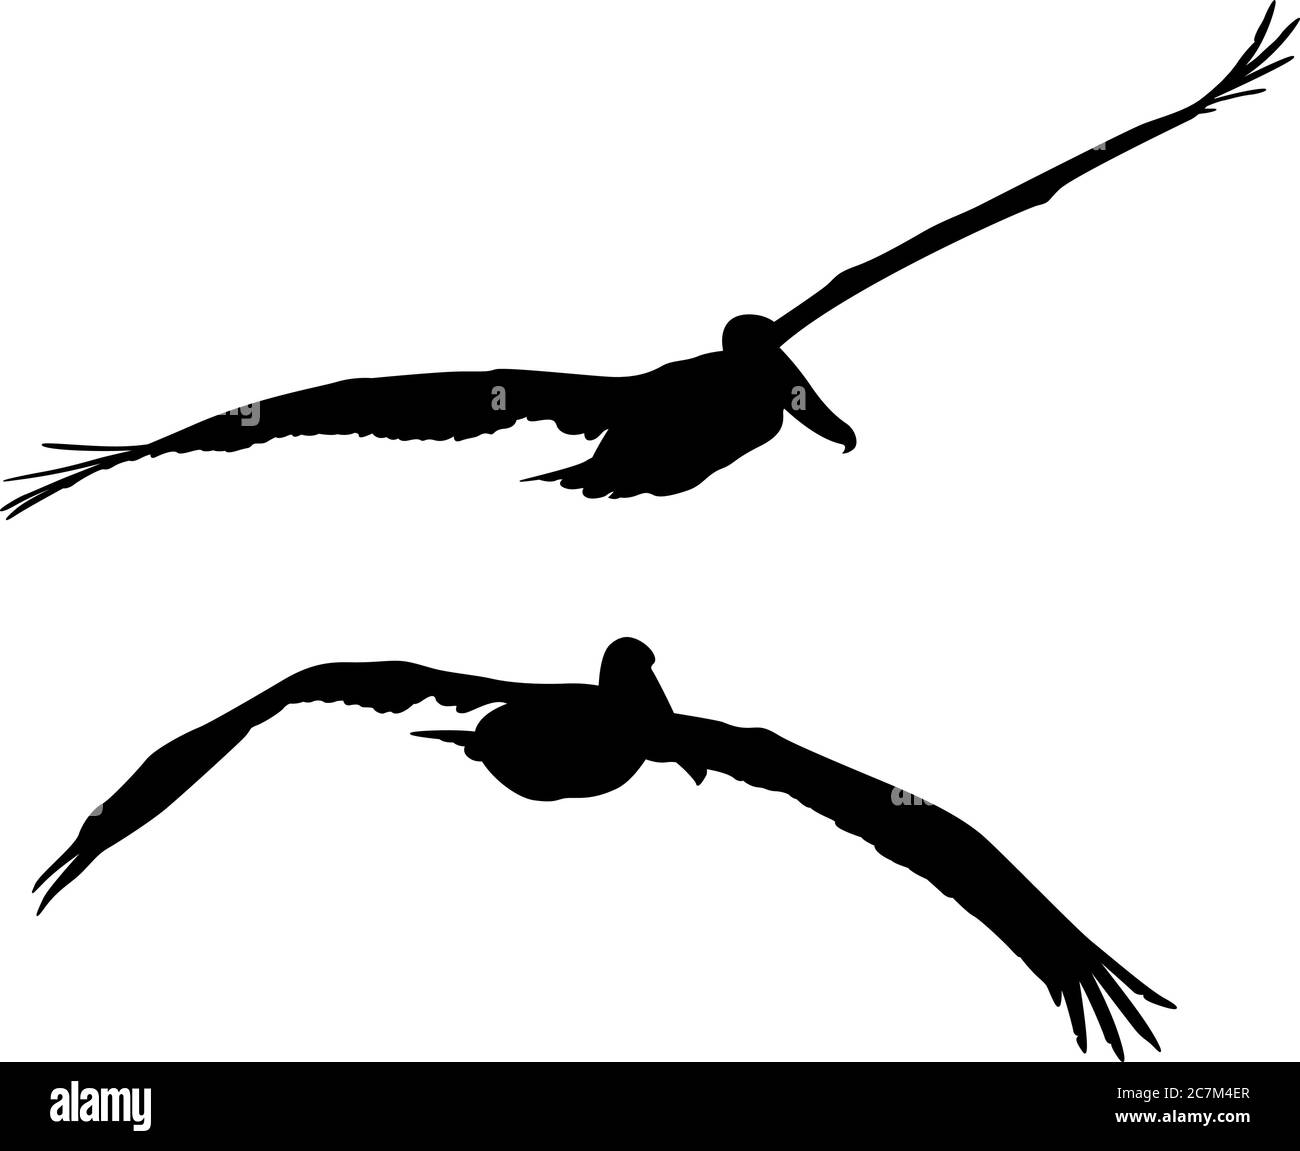 Siluetas aisladas negras de dos pelícanos voladores Ilustración del Vector